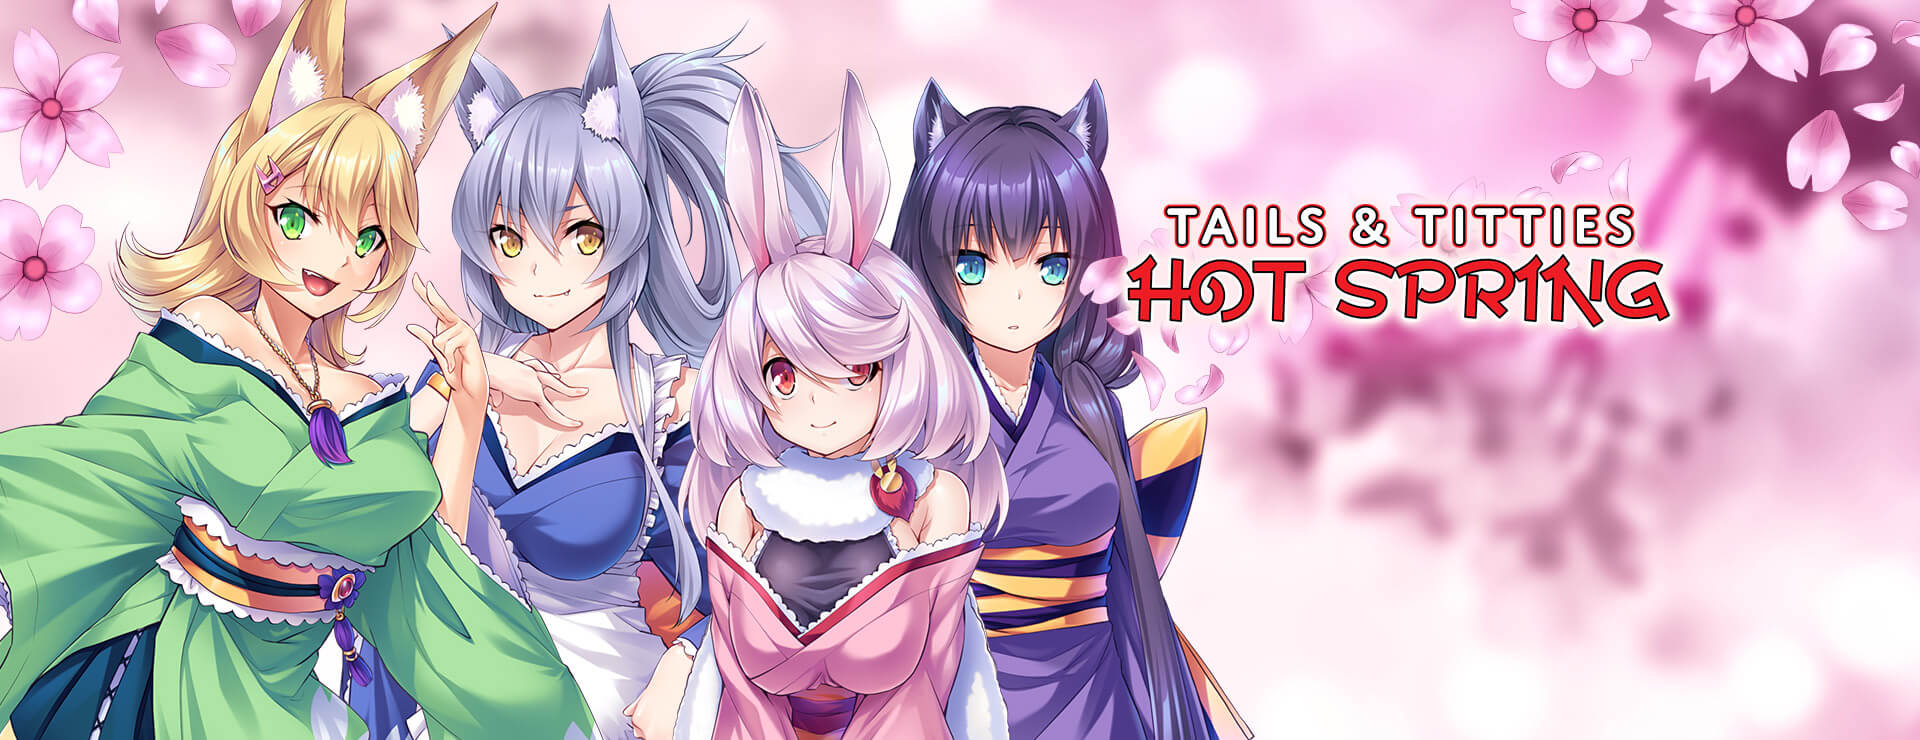 Tails & Titties Hot Spring - ビジュアルノベル ゲーム